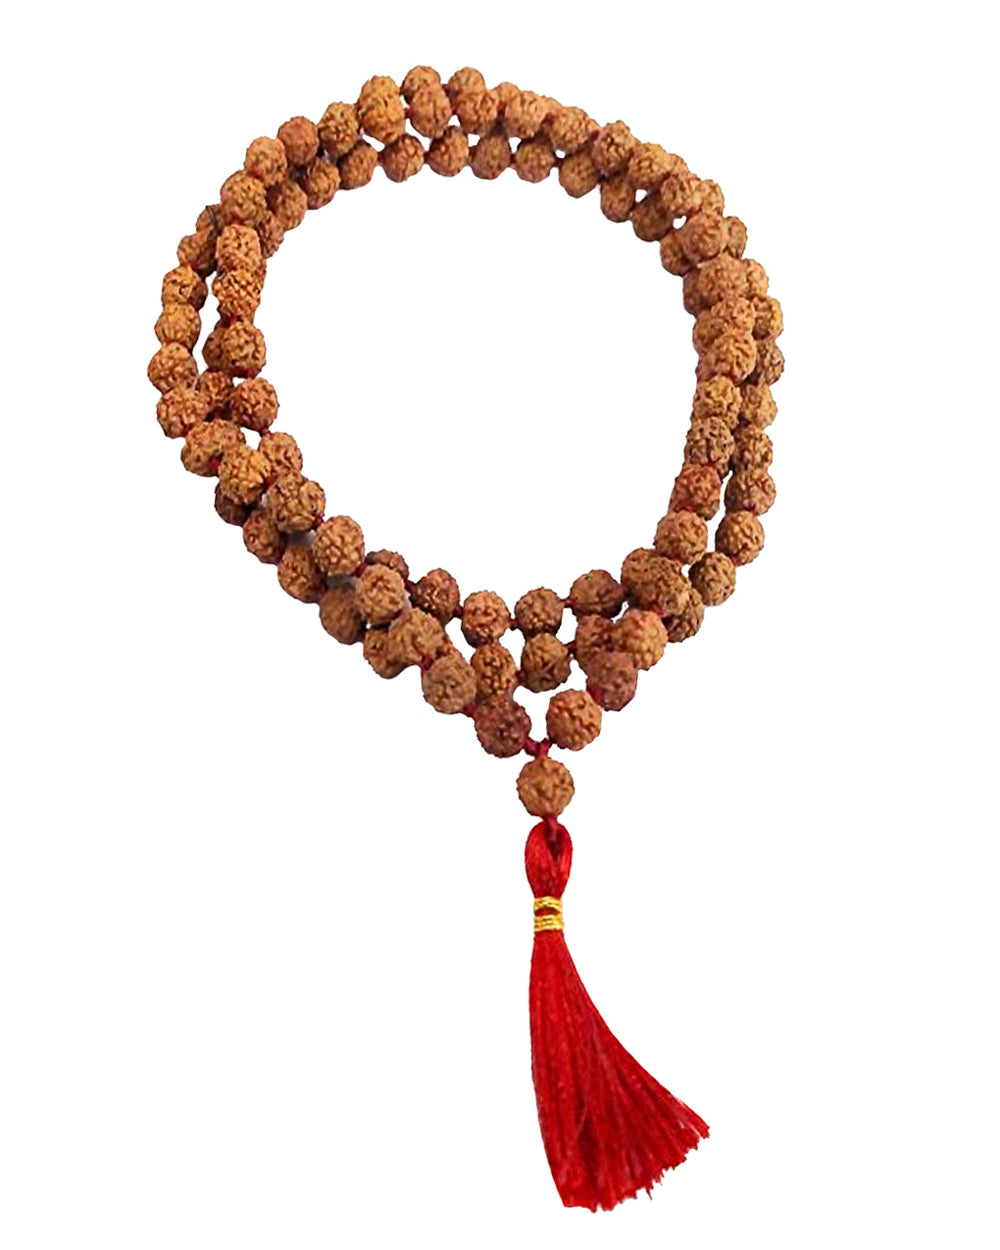 108 Rudraksha Bead Necklace Natural Seeds Yoga Spiritual Prayer